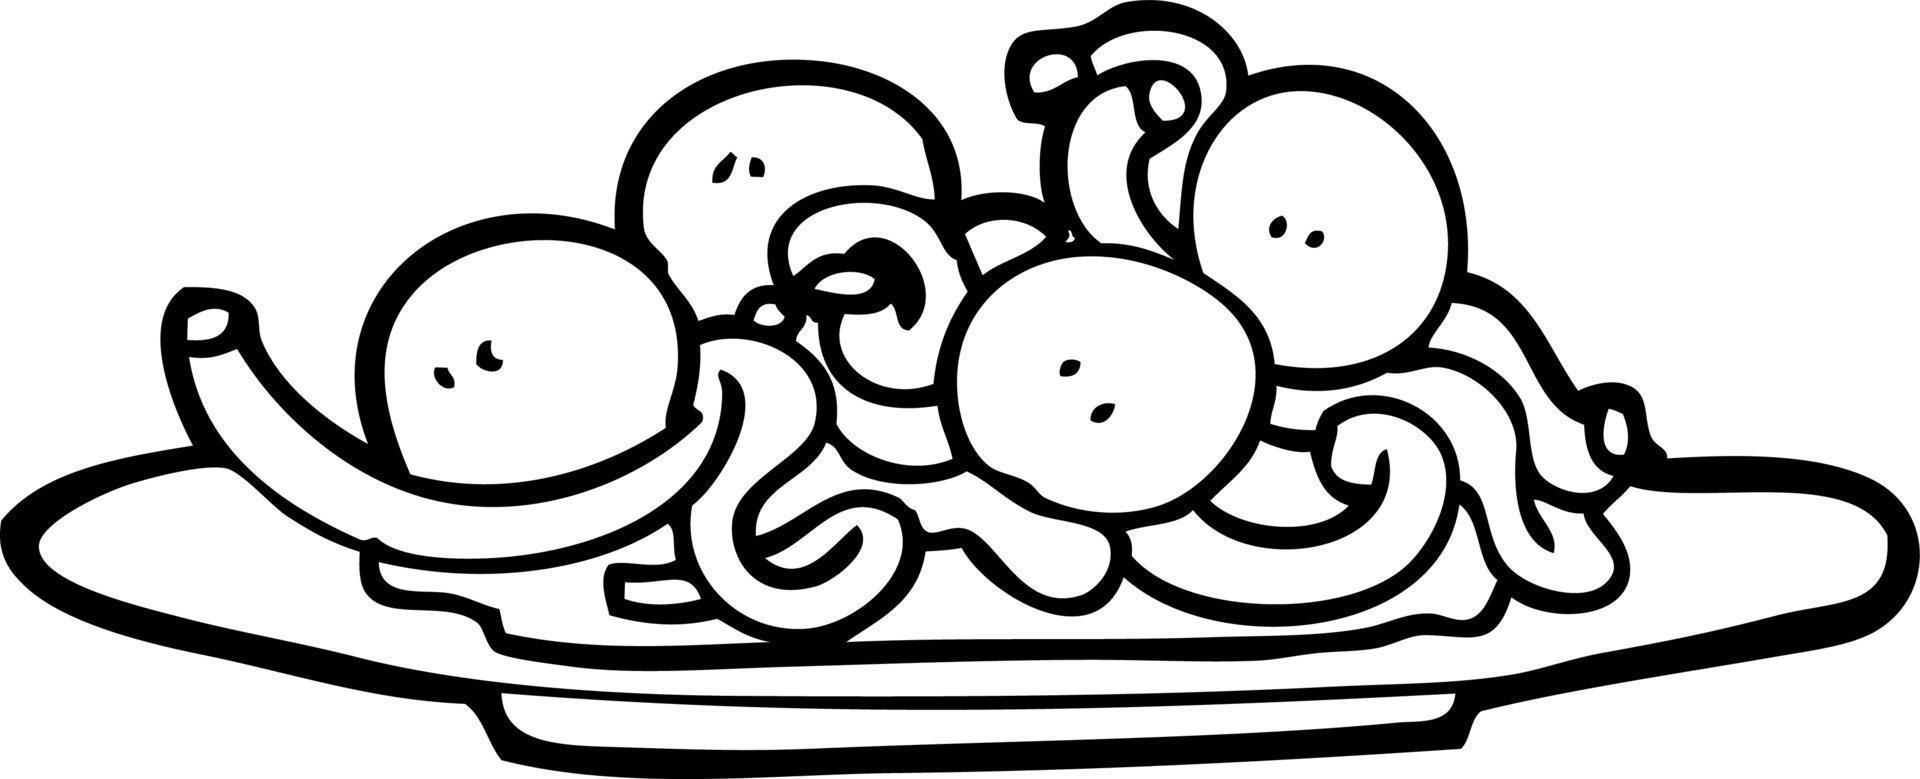 spaghetti et boulettes de viande de dessin animé noir et blanc vecteur